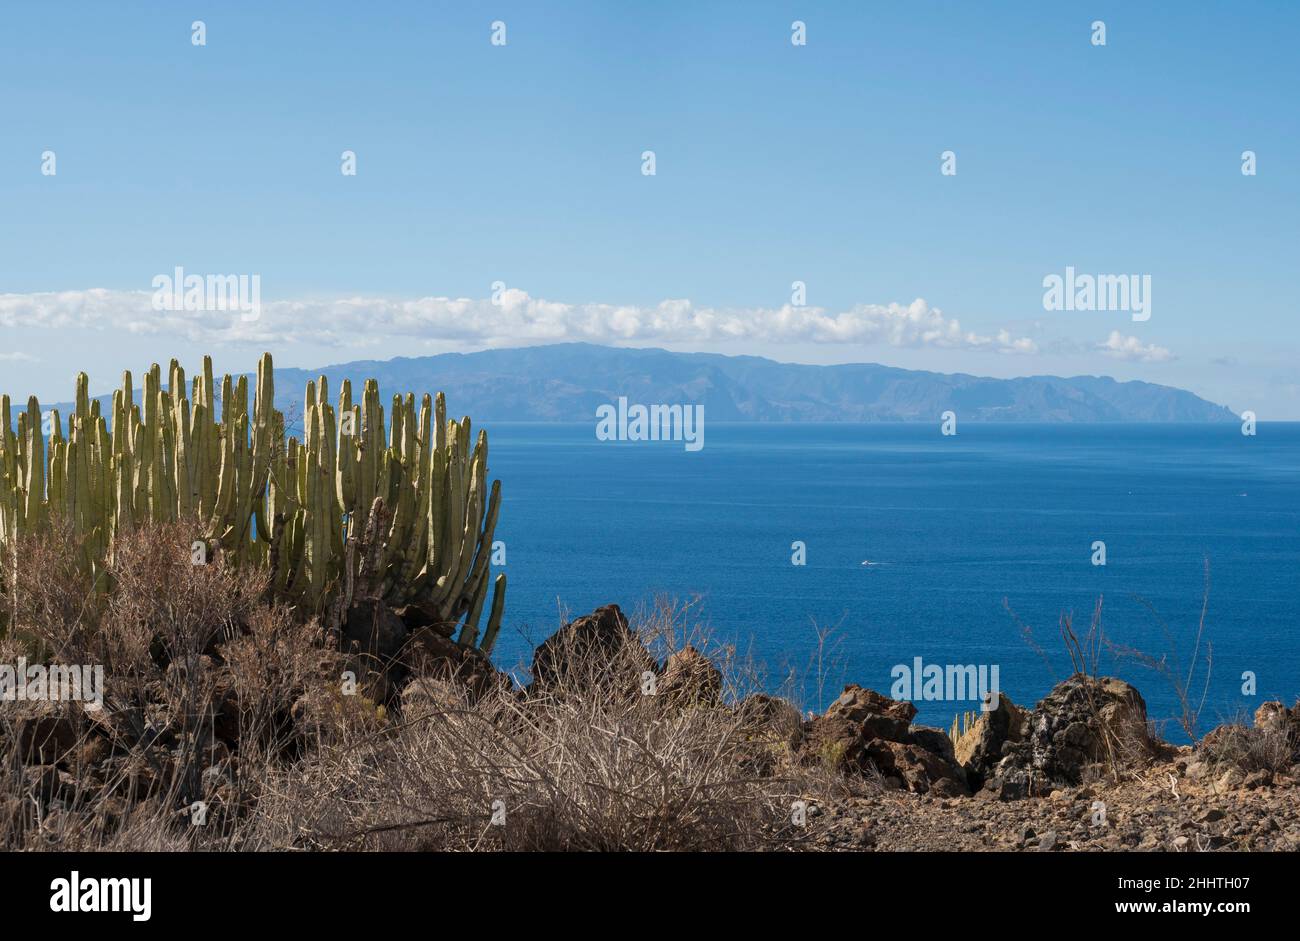 Afloramiento volcánico cerca de Archipenque, Los Gigantes, Tenerife. Vista de Puerto Santiago a La Gomera, con cactus. Foto de stock